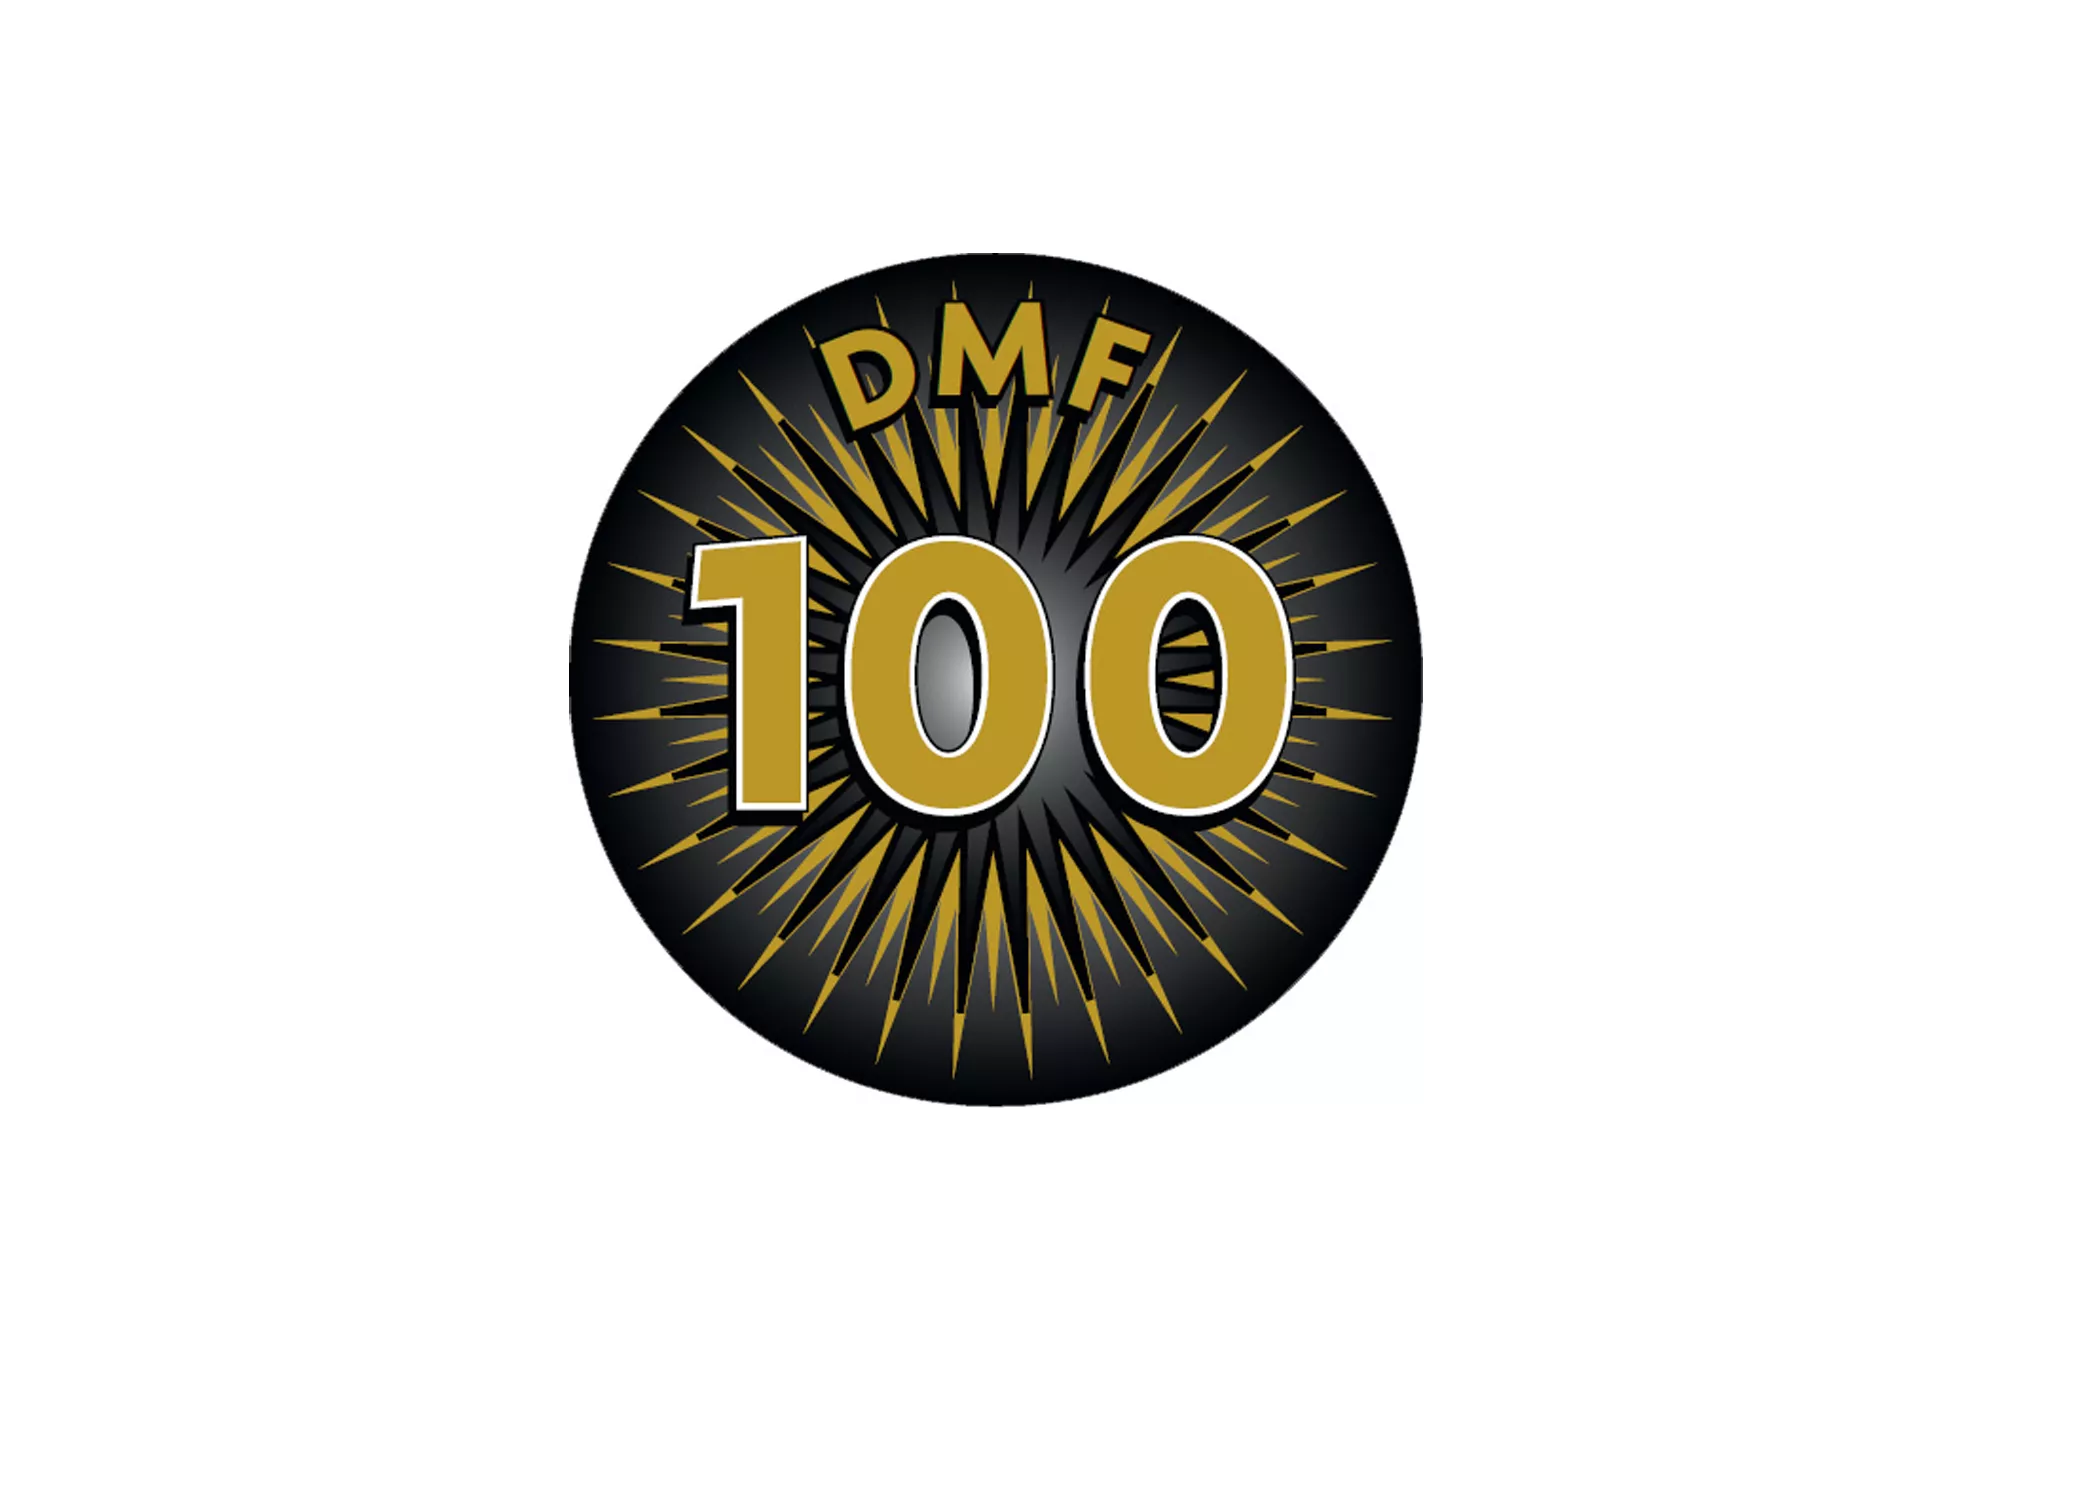 DMF fejrer 100-års jubilæum